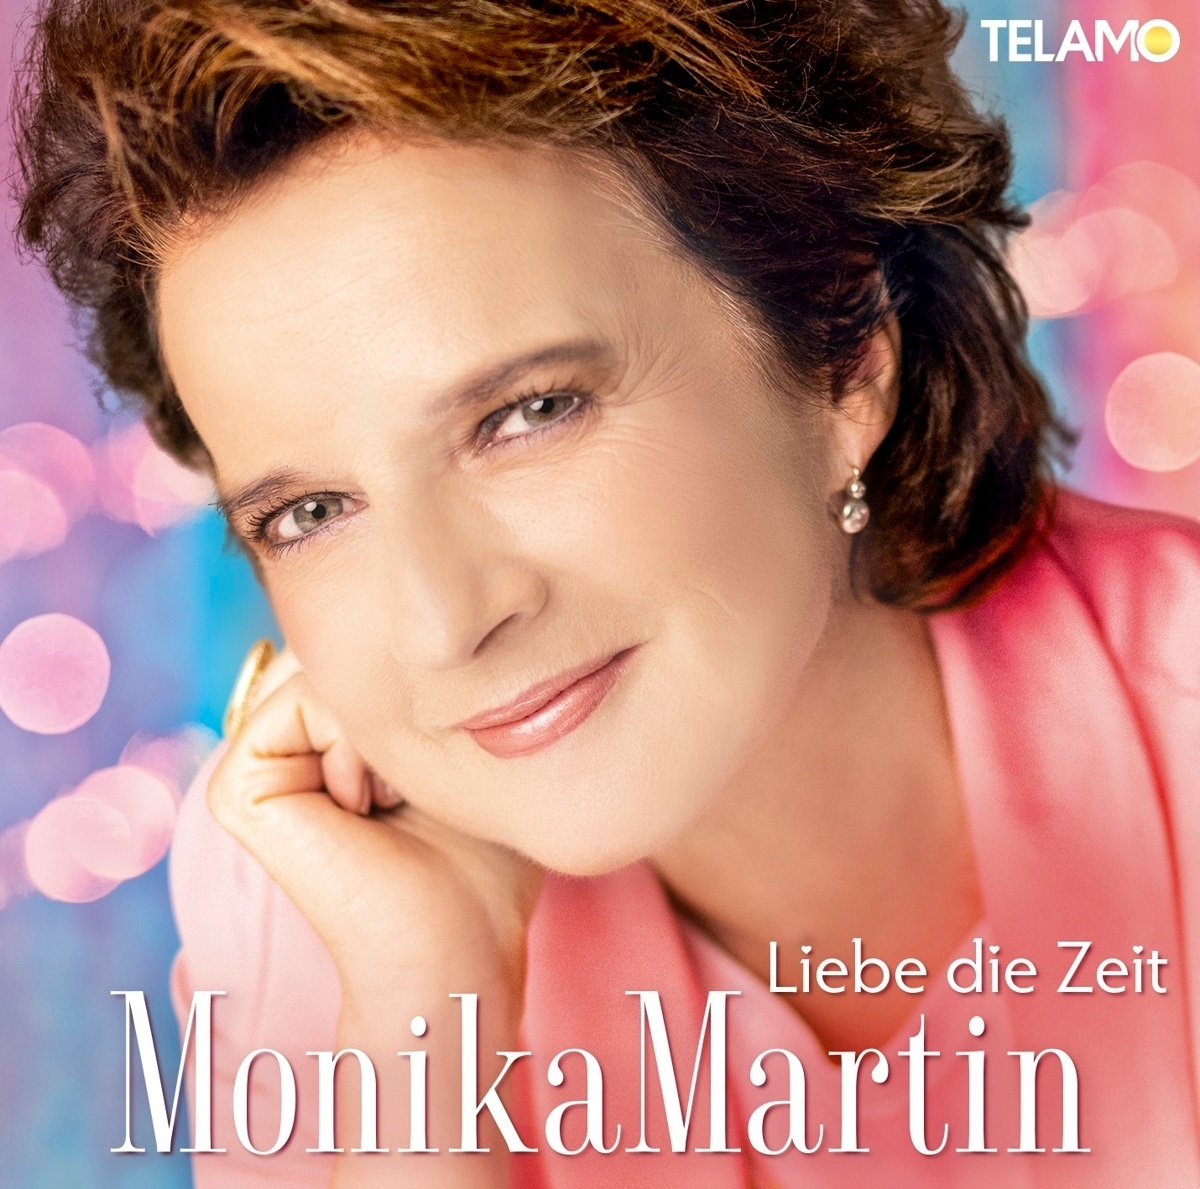 Diese Liebe schickt der Himmel - Monika Martin. (CD)